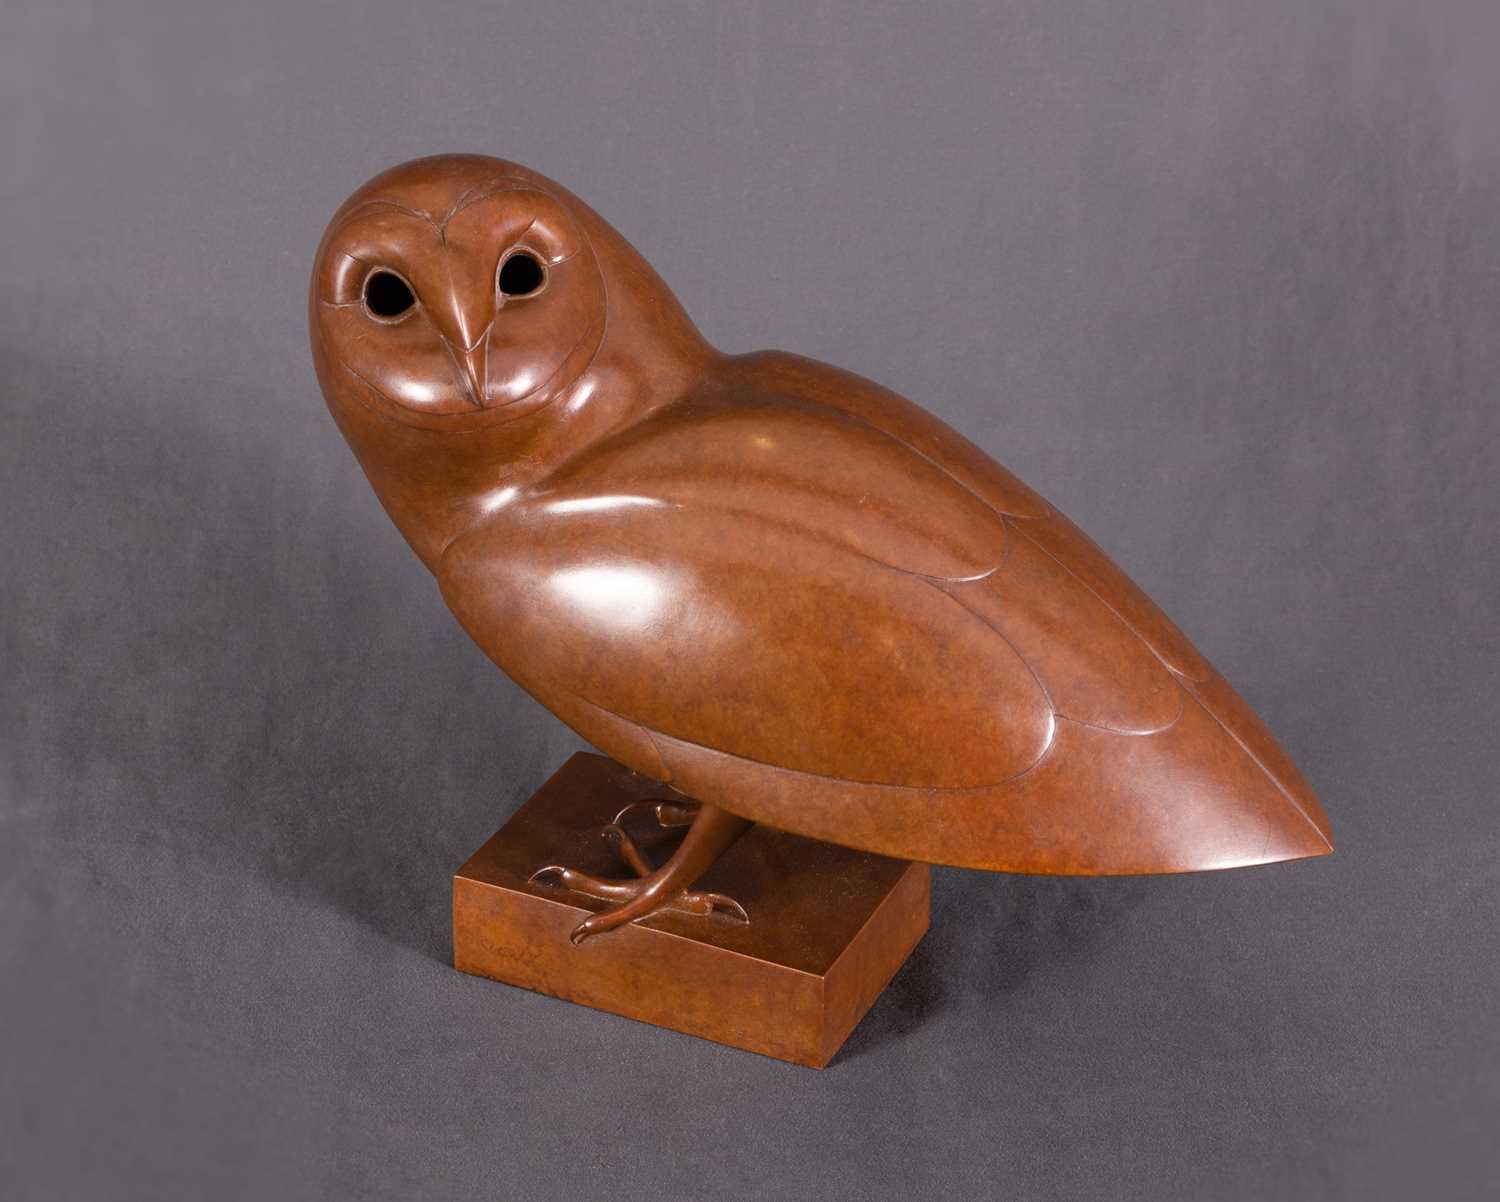 221 - Geoffrey Dashwood, Barn Owl I, 1989